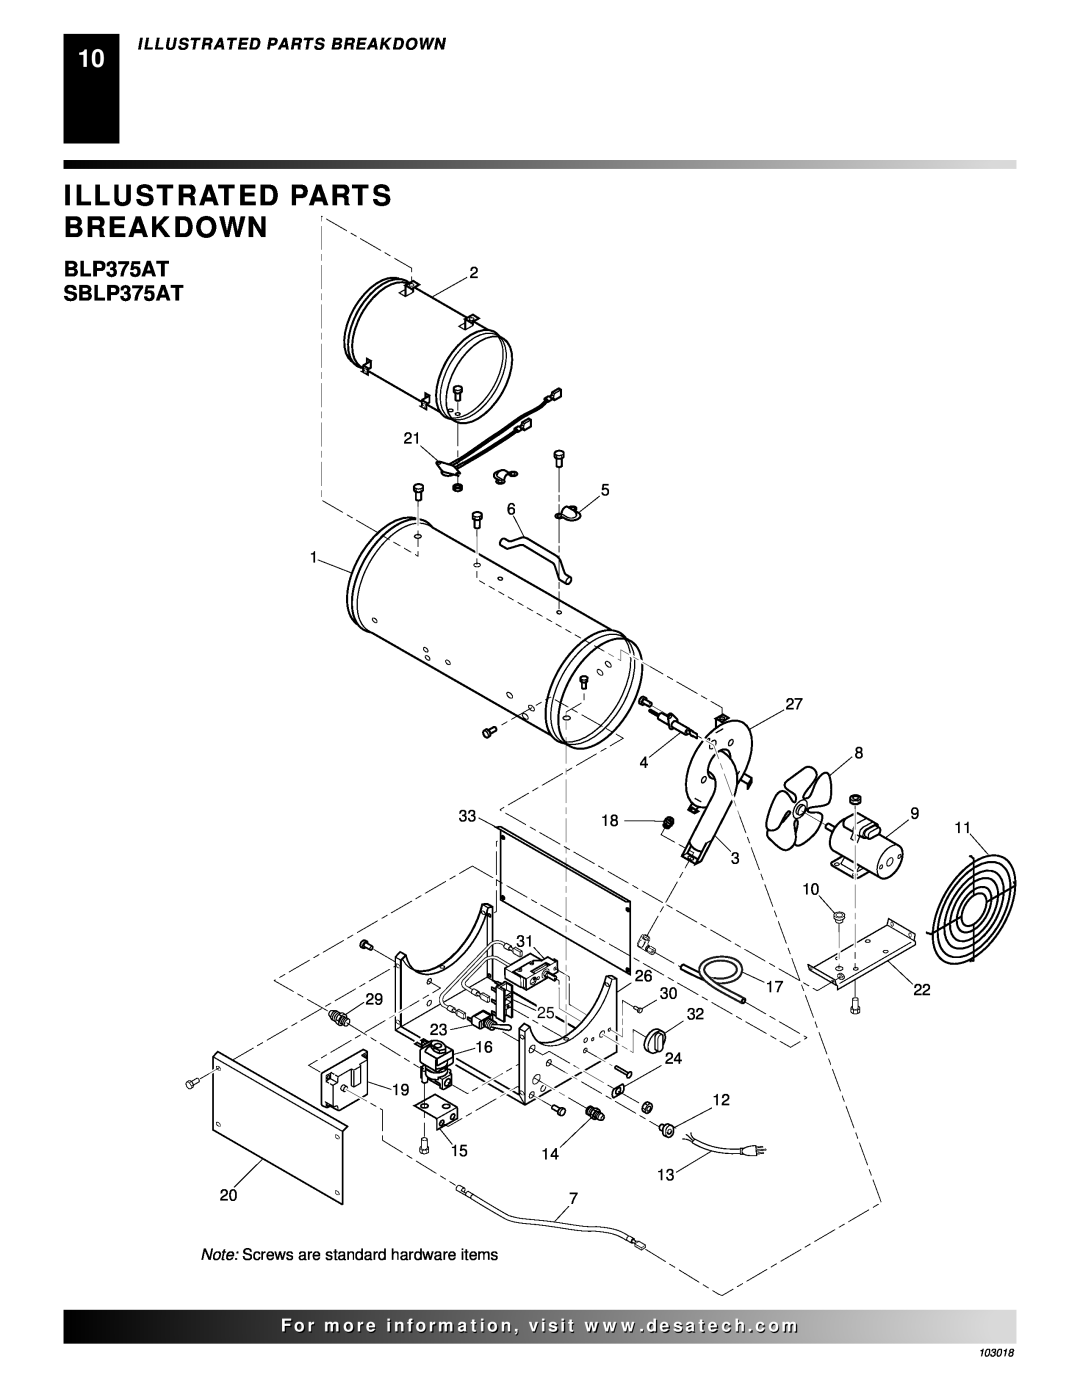 Desa AT Series owner manual Illustrated Parts Breakdown, BLP375AT SBLP375AT, 103018 